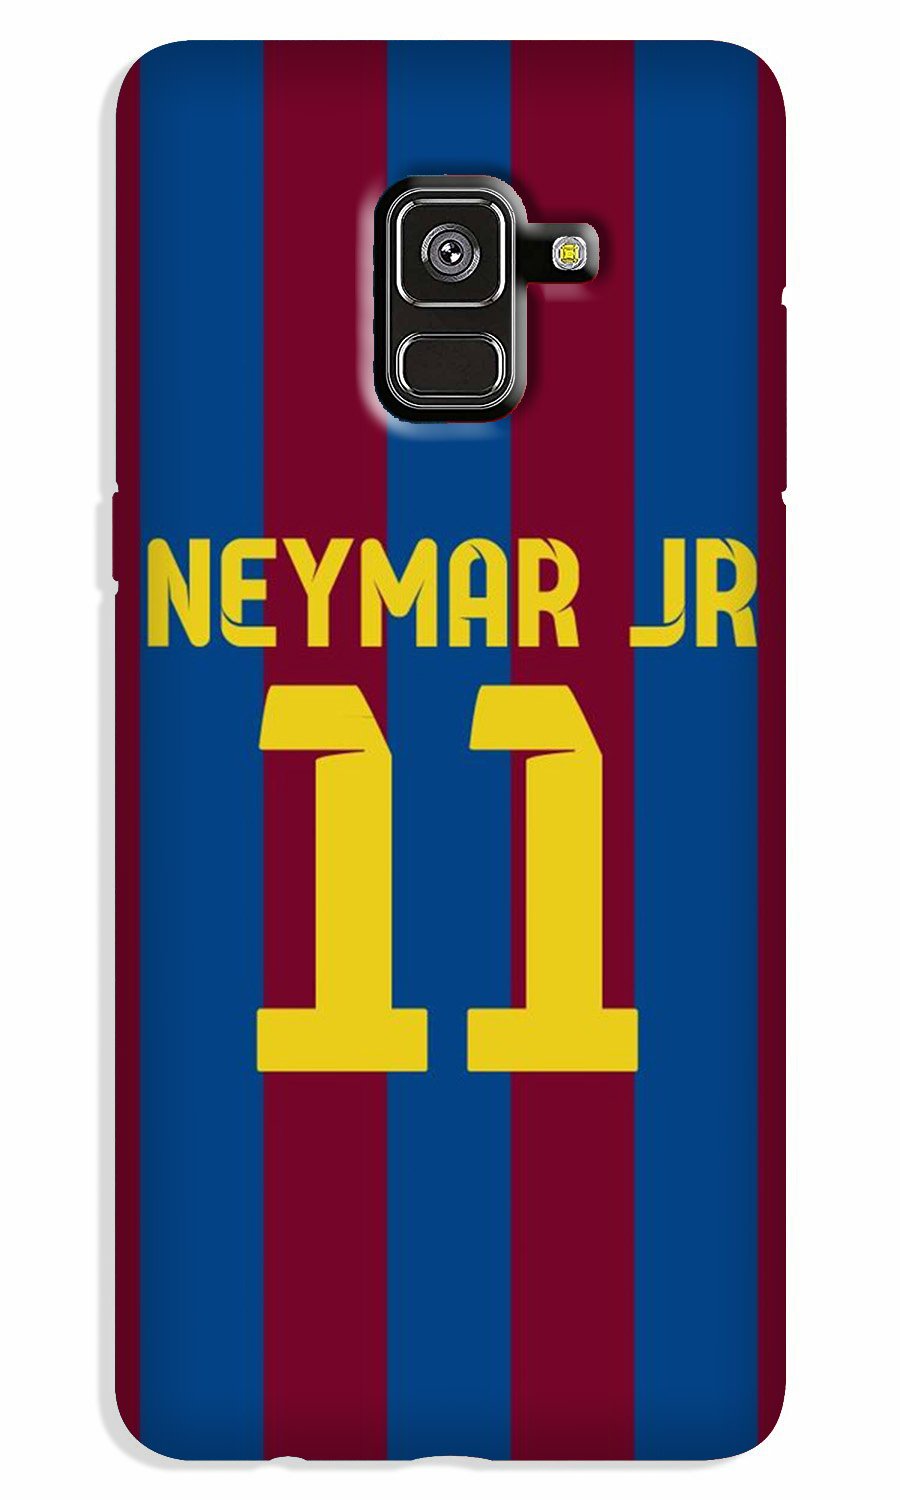 Neymar Jr Case for Galaxy A5 (2018)(Design - 162)